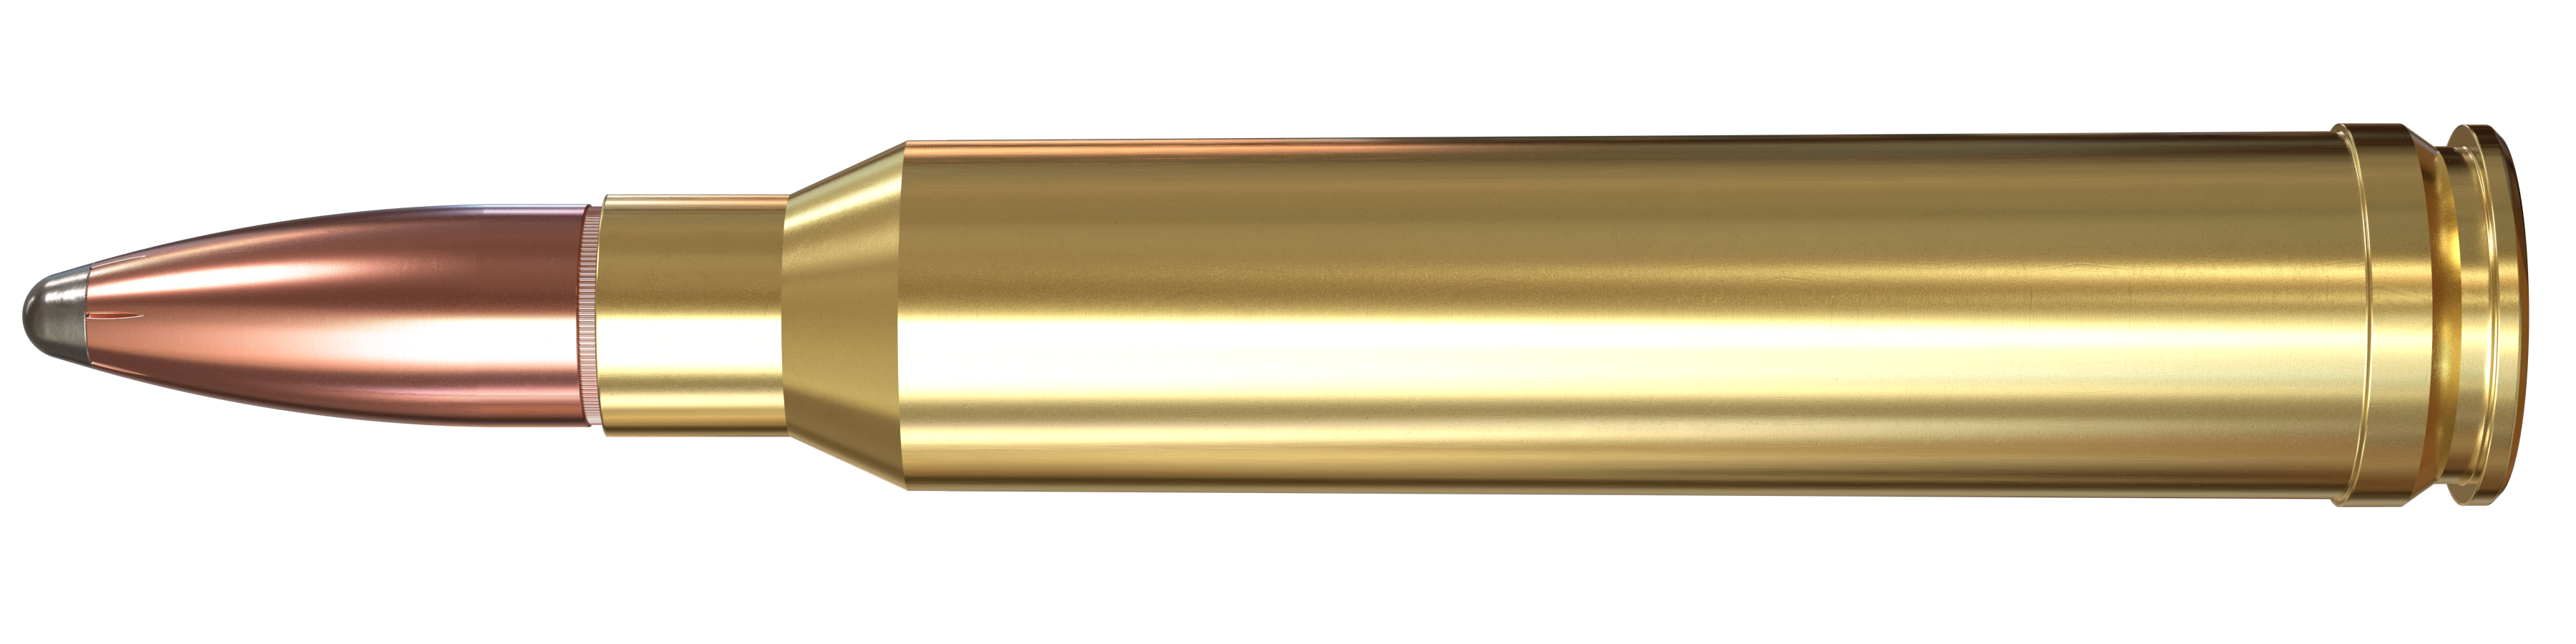 300 Winchester Magnum, 180 Grain Features